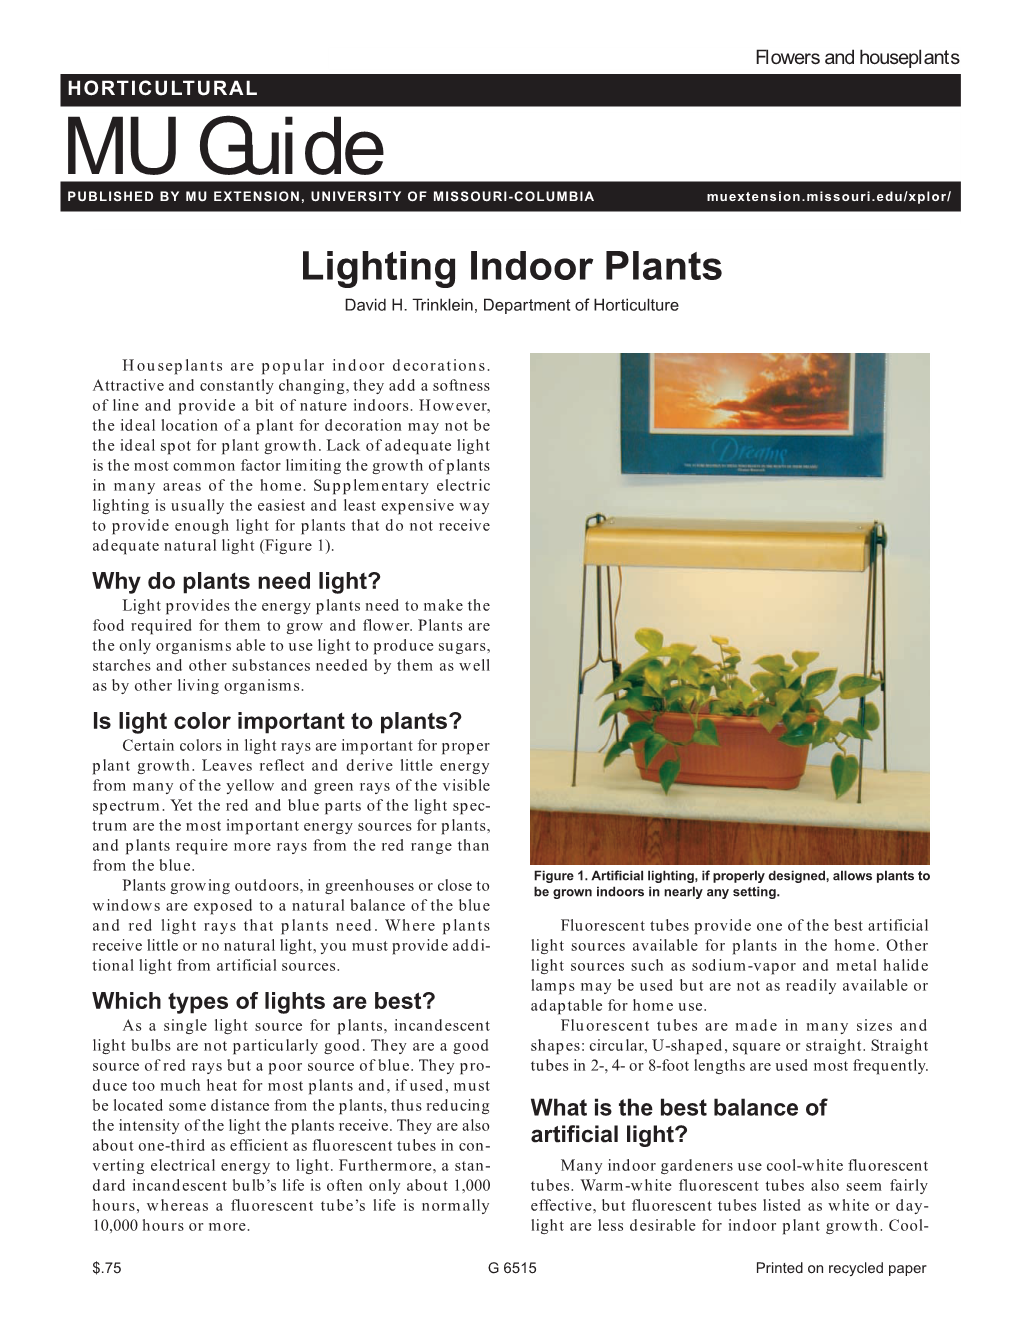 Lighting Indoor Plants David H